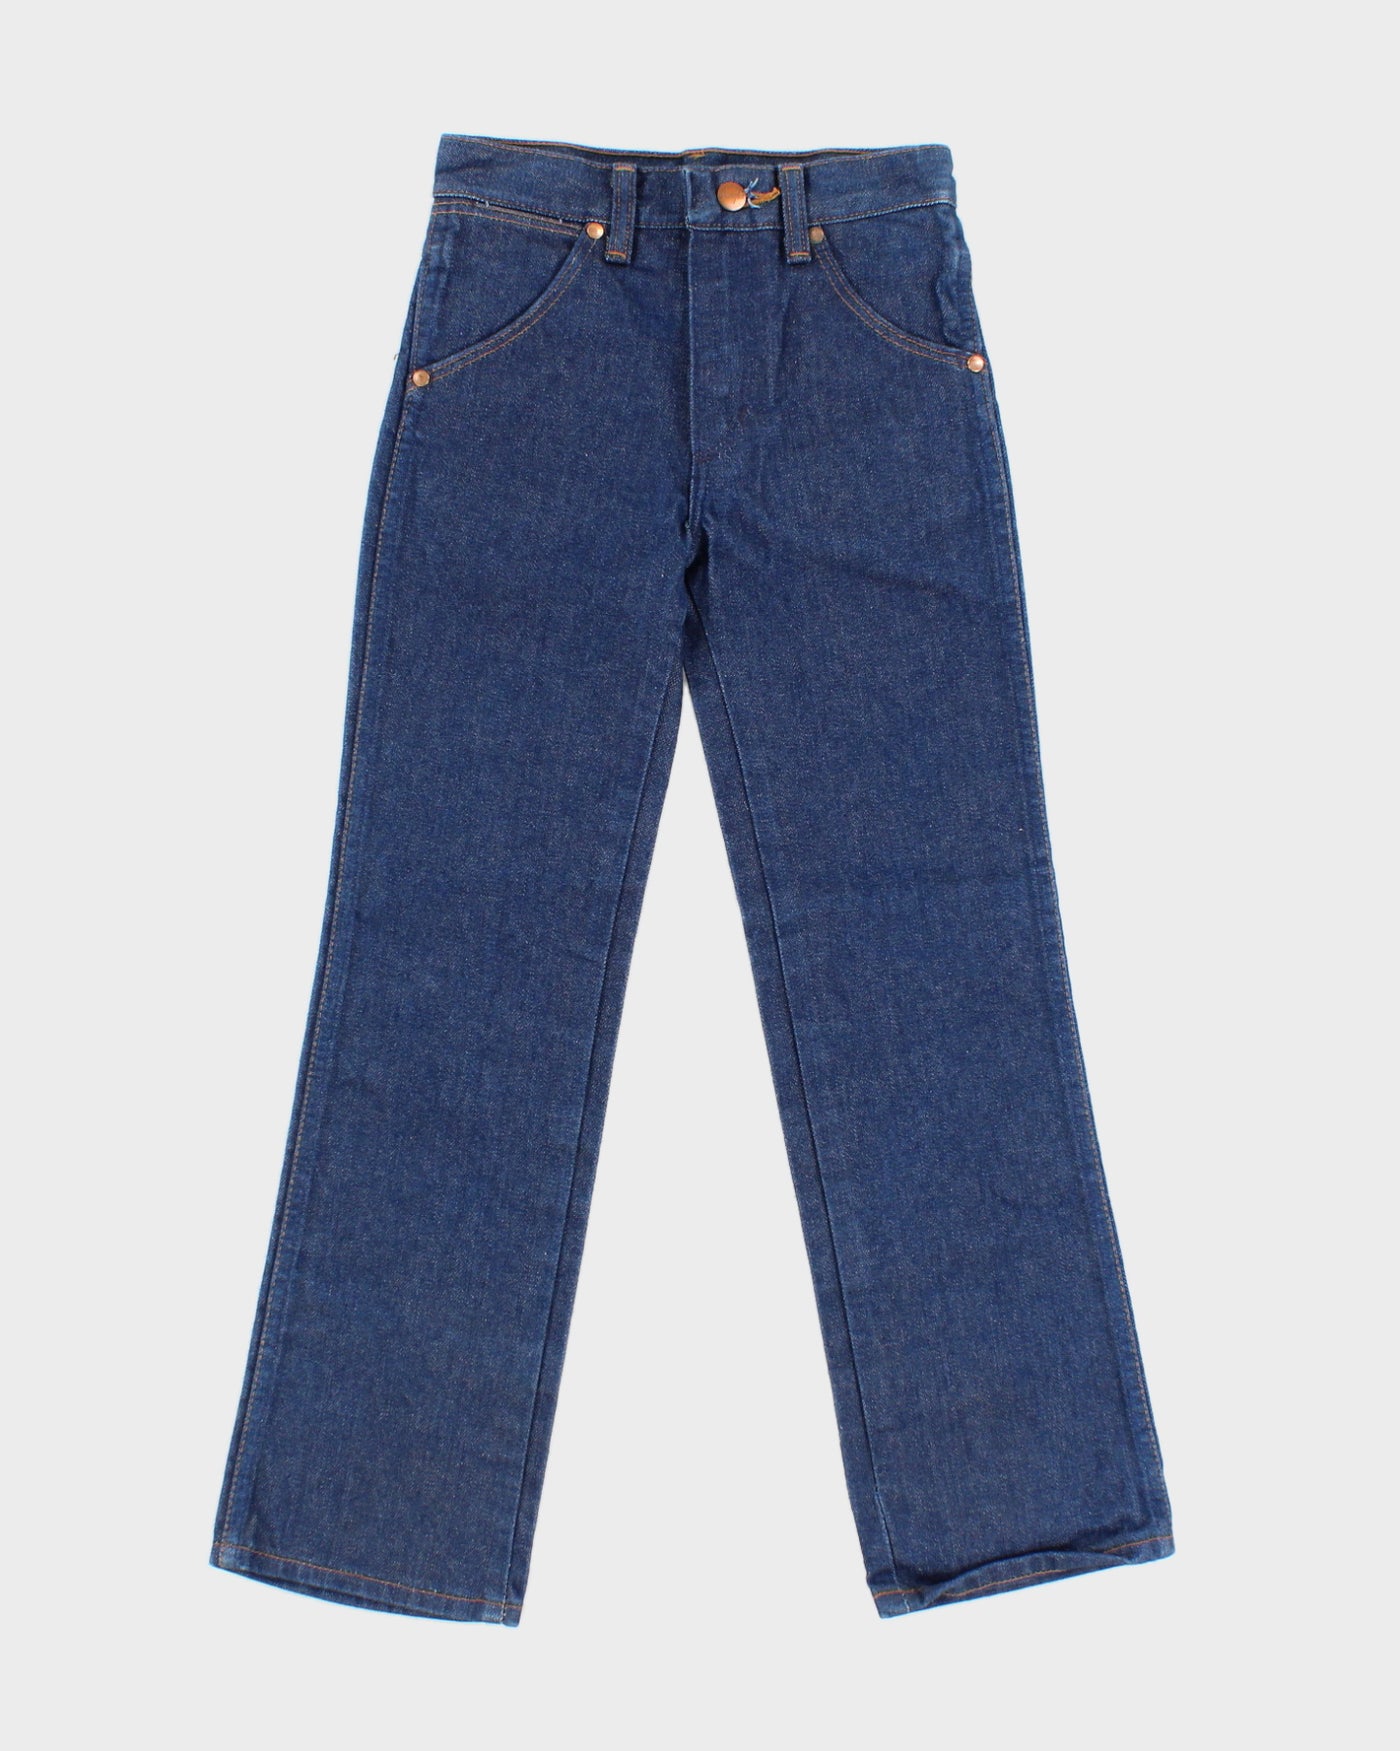 Children's 1970s Wrangler Jeans